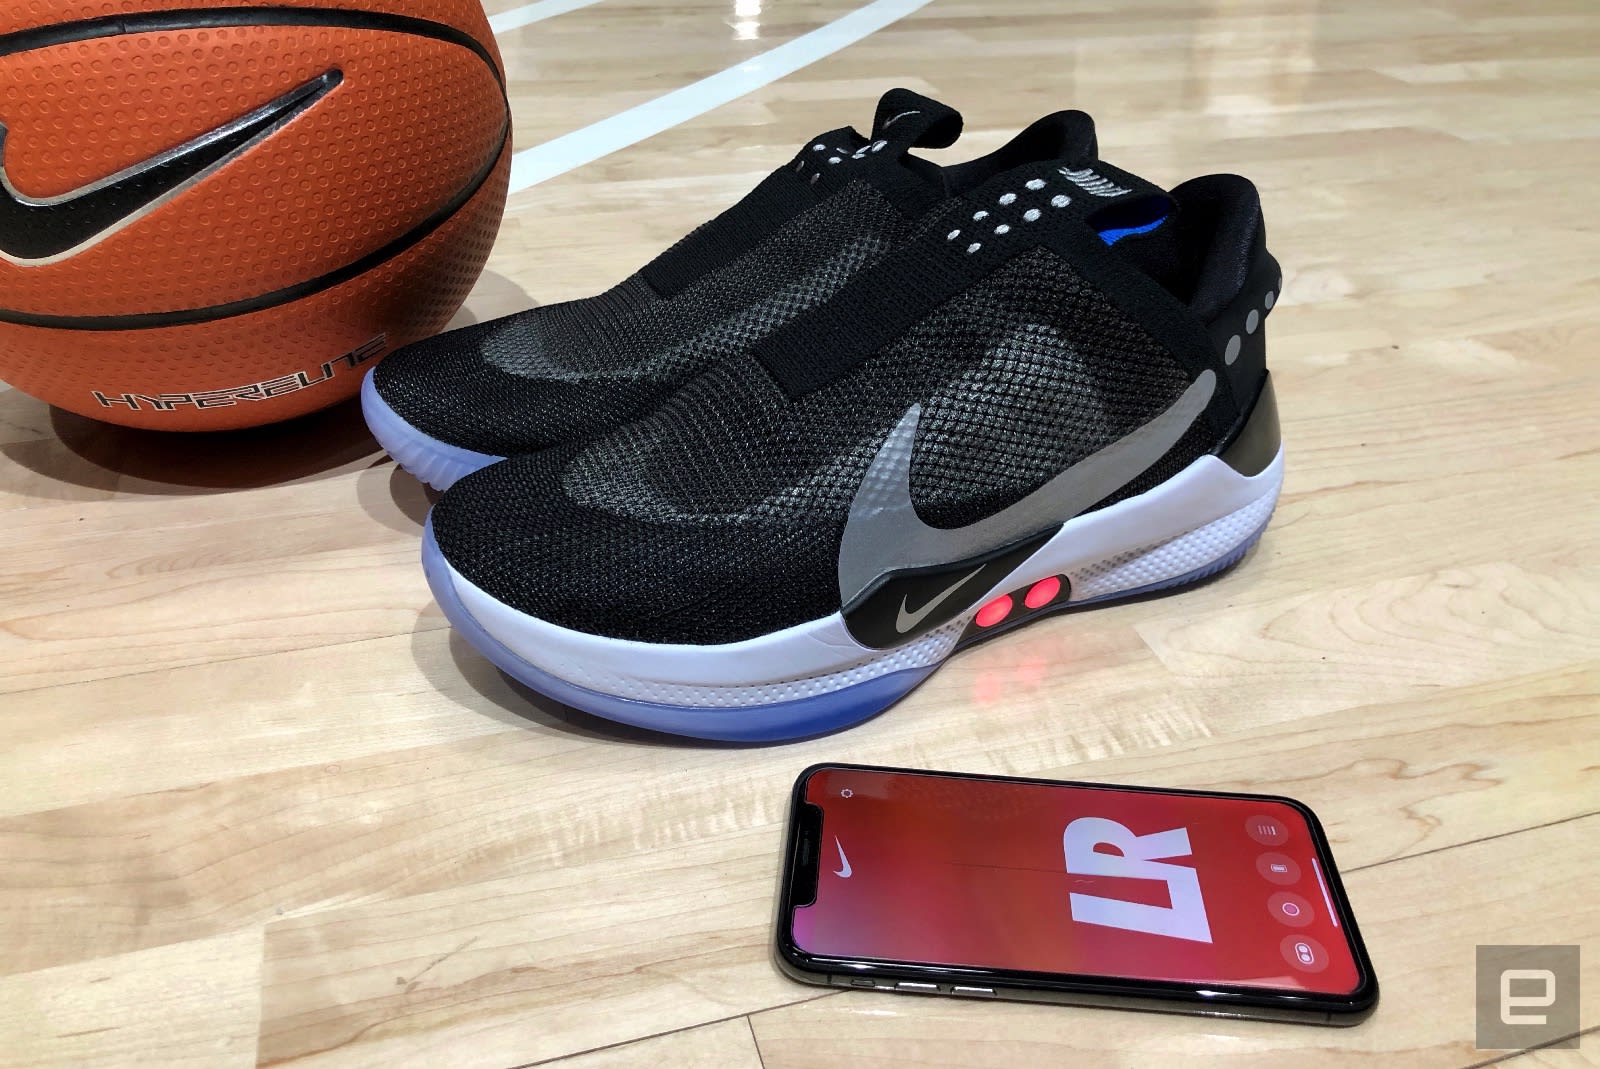 A closer look at Nike's Adapt BB autolacing basketball